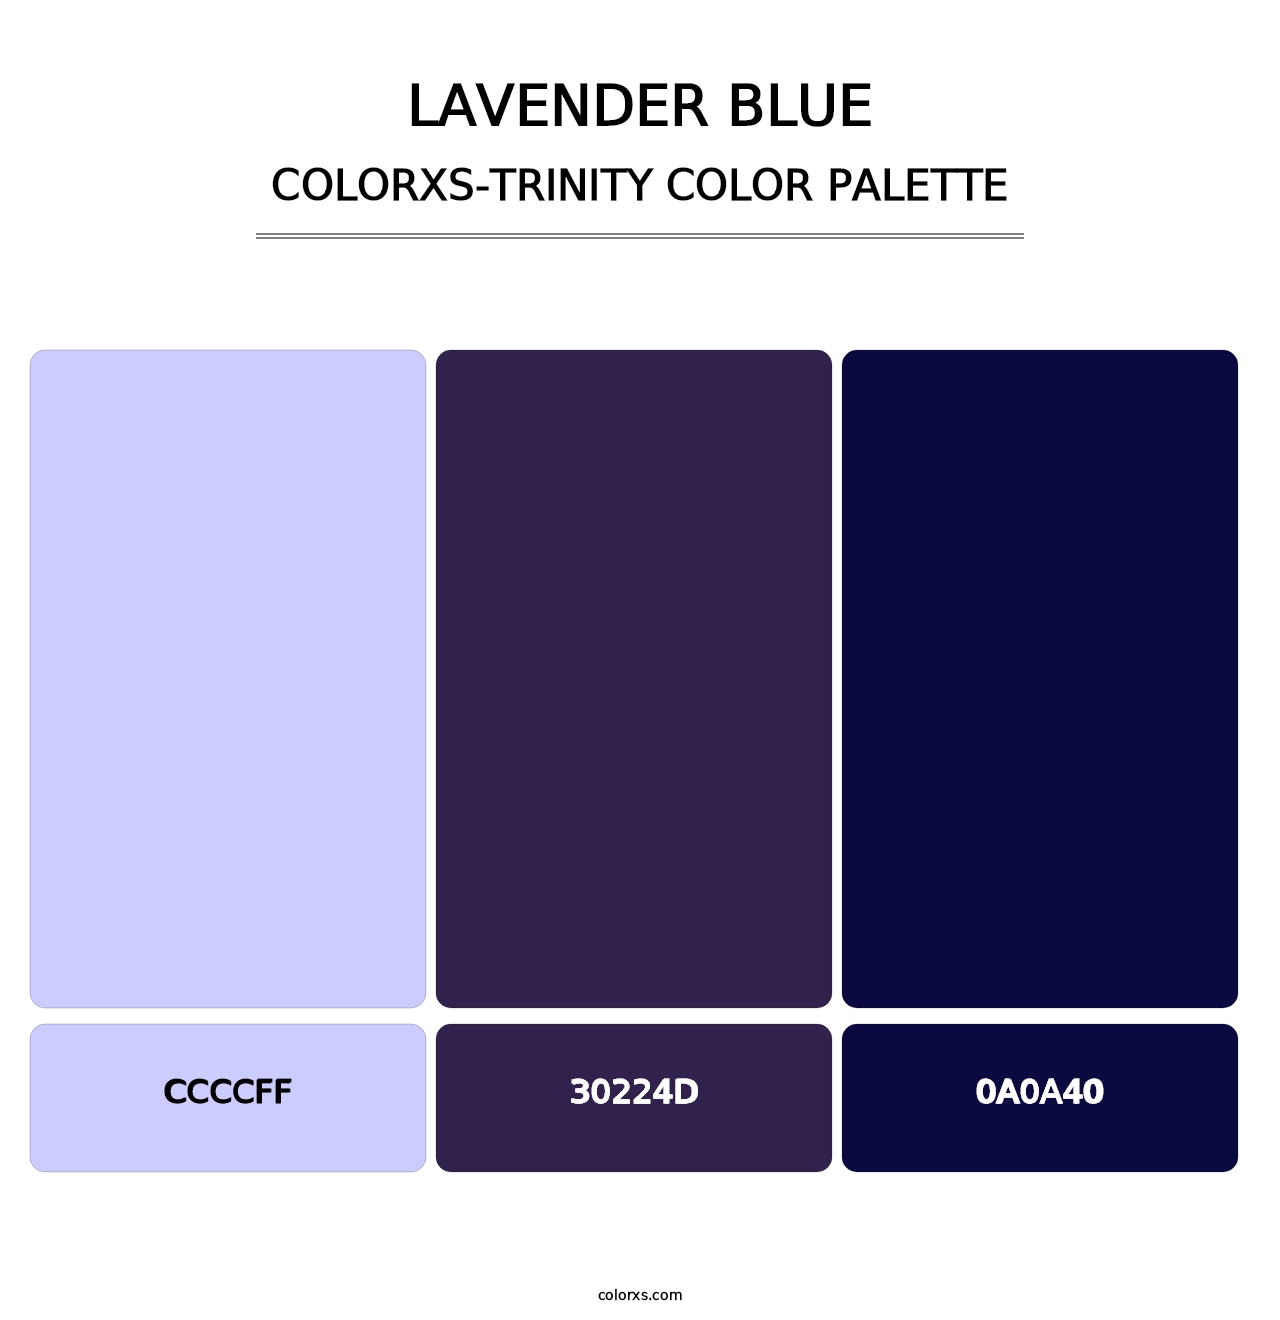 Lavender Blue - Colorxs Trinity Palette